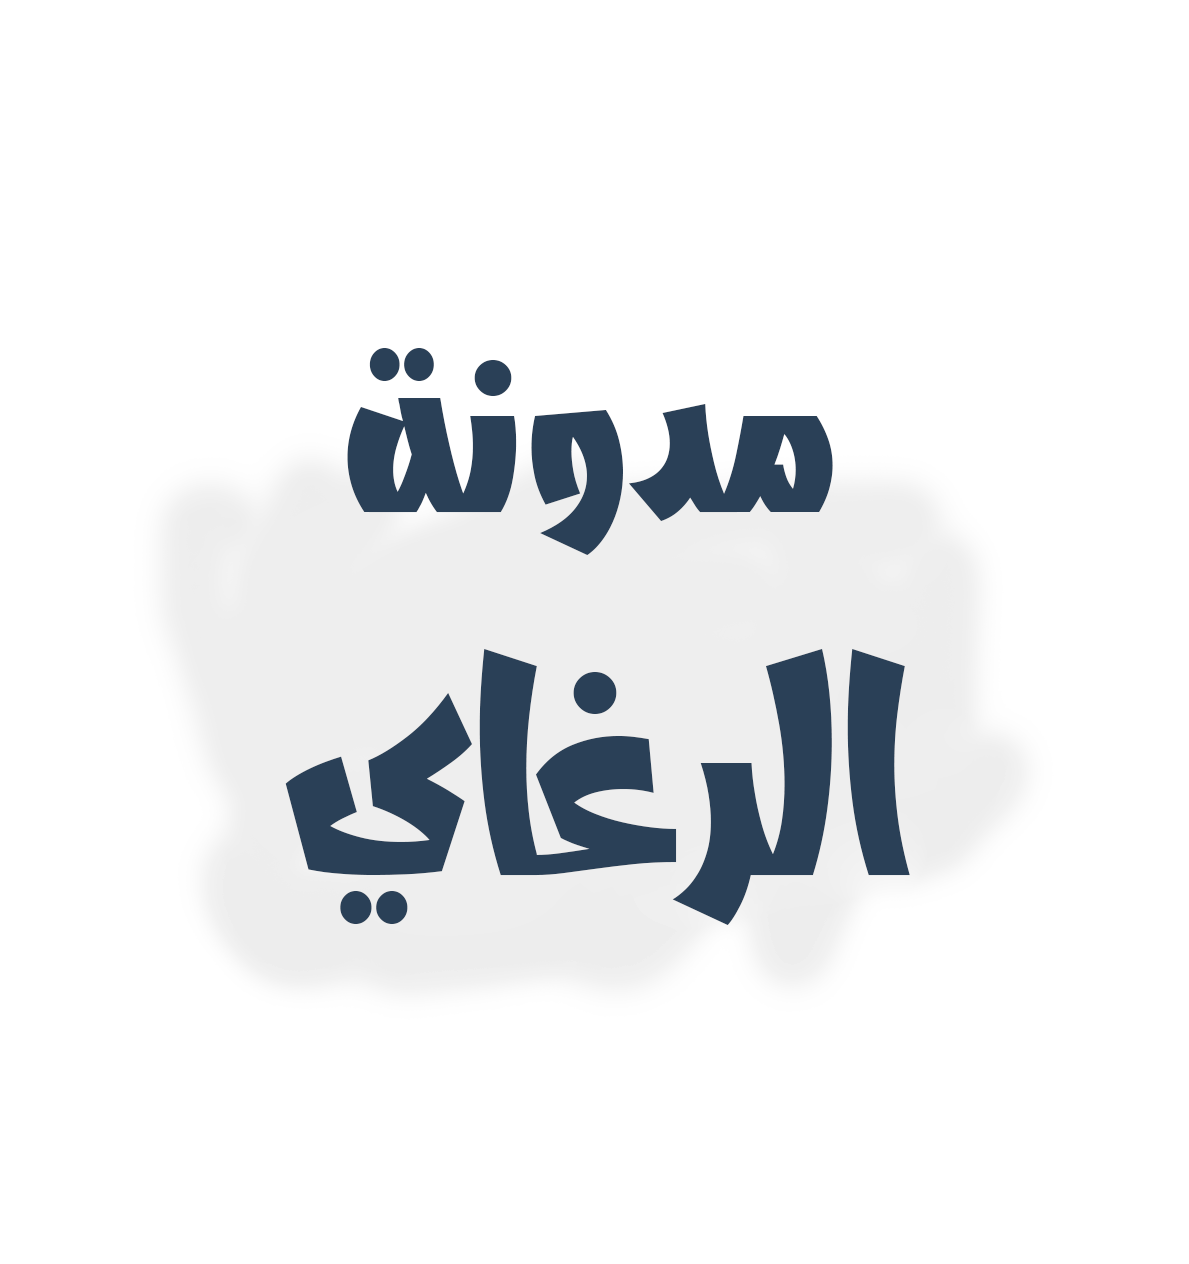 الرغاي | Youtalkative مدونة عربية مصرية ليست تعليمية ولكن الغرض منها هو مشاركة كل ما هو جديد في عالم التقنية مما يؤدي إلي النهوض بالمحتوي العربي التقني 